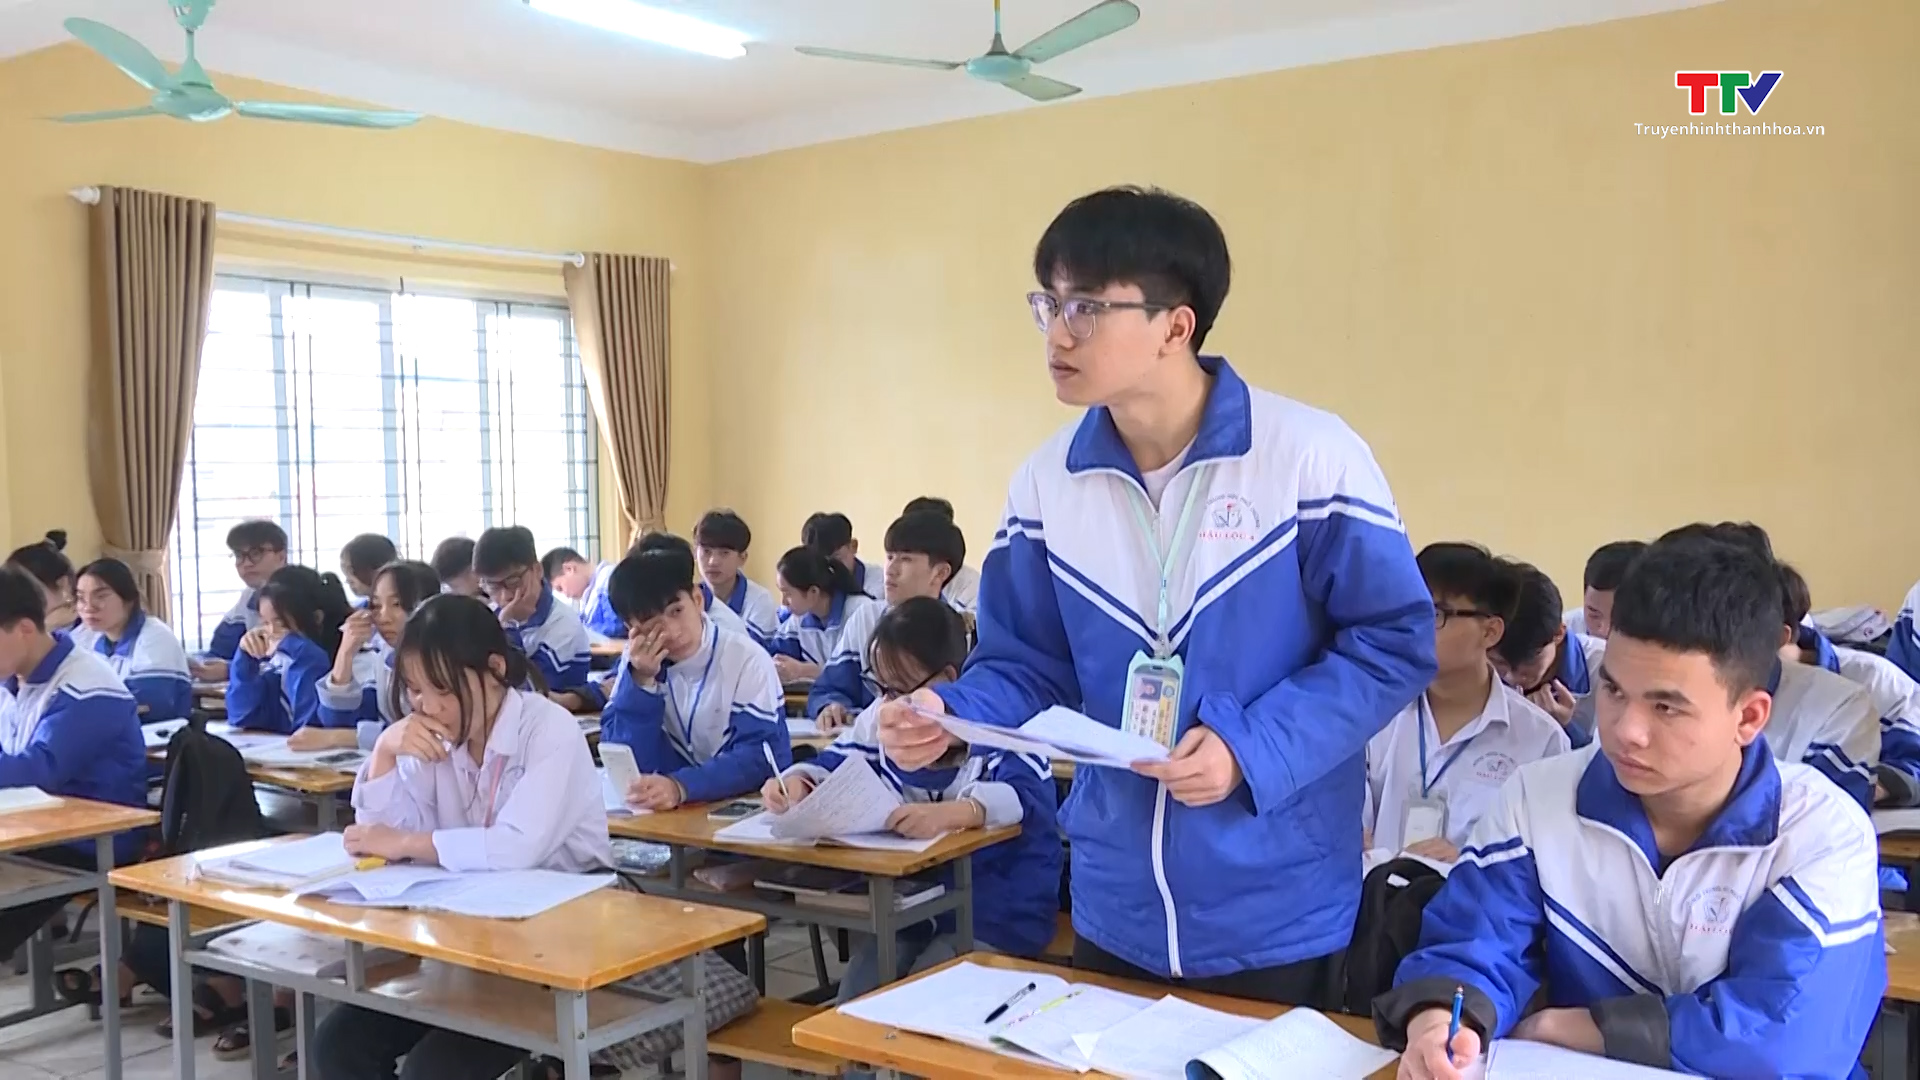 Trường Trung học phổ thông Hậu Lộc 4 lần đầu tiên có học sinh đạt giải quốc gia - Ảnh 4.